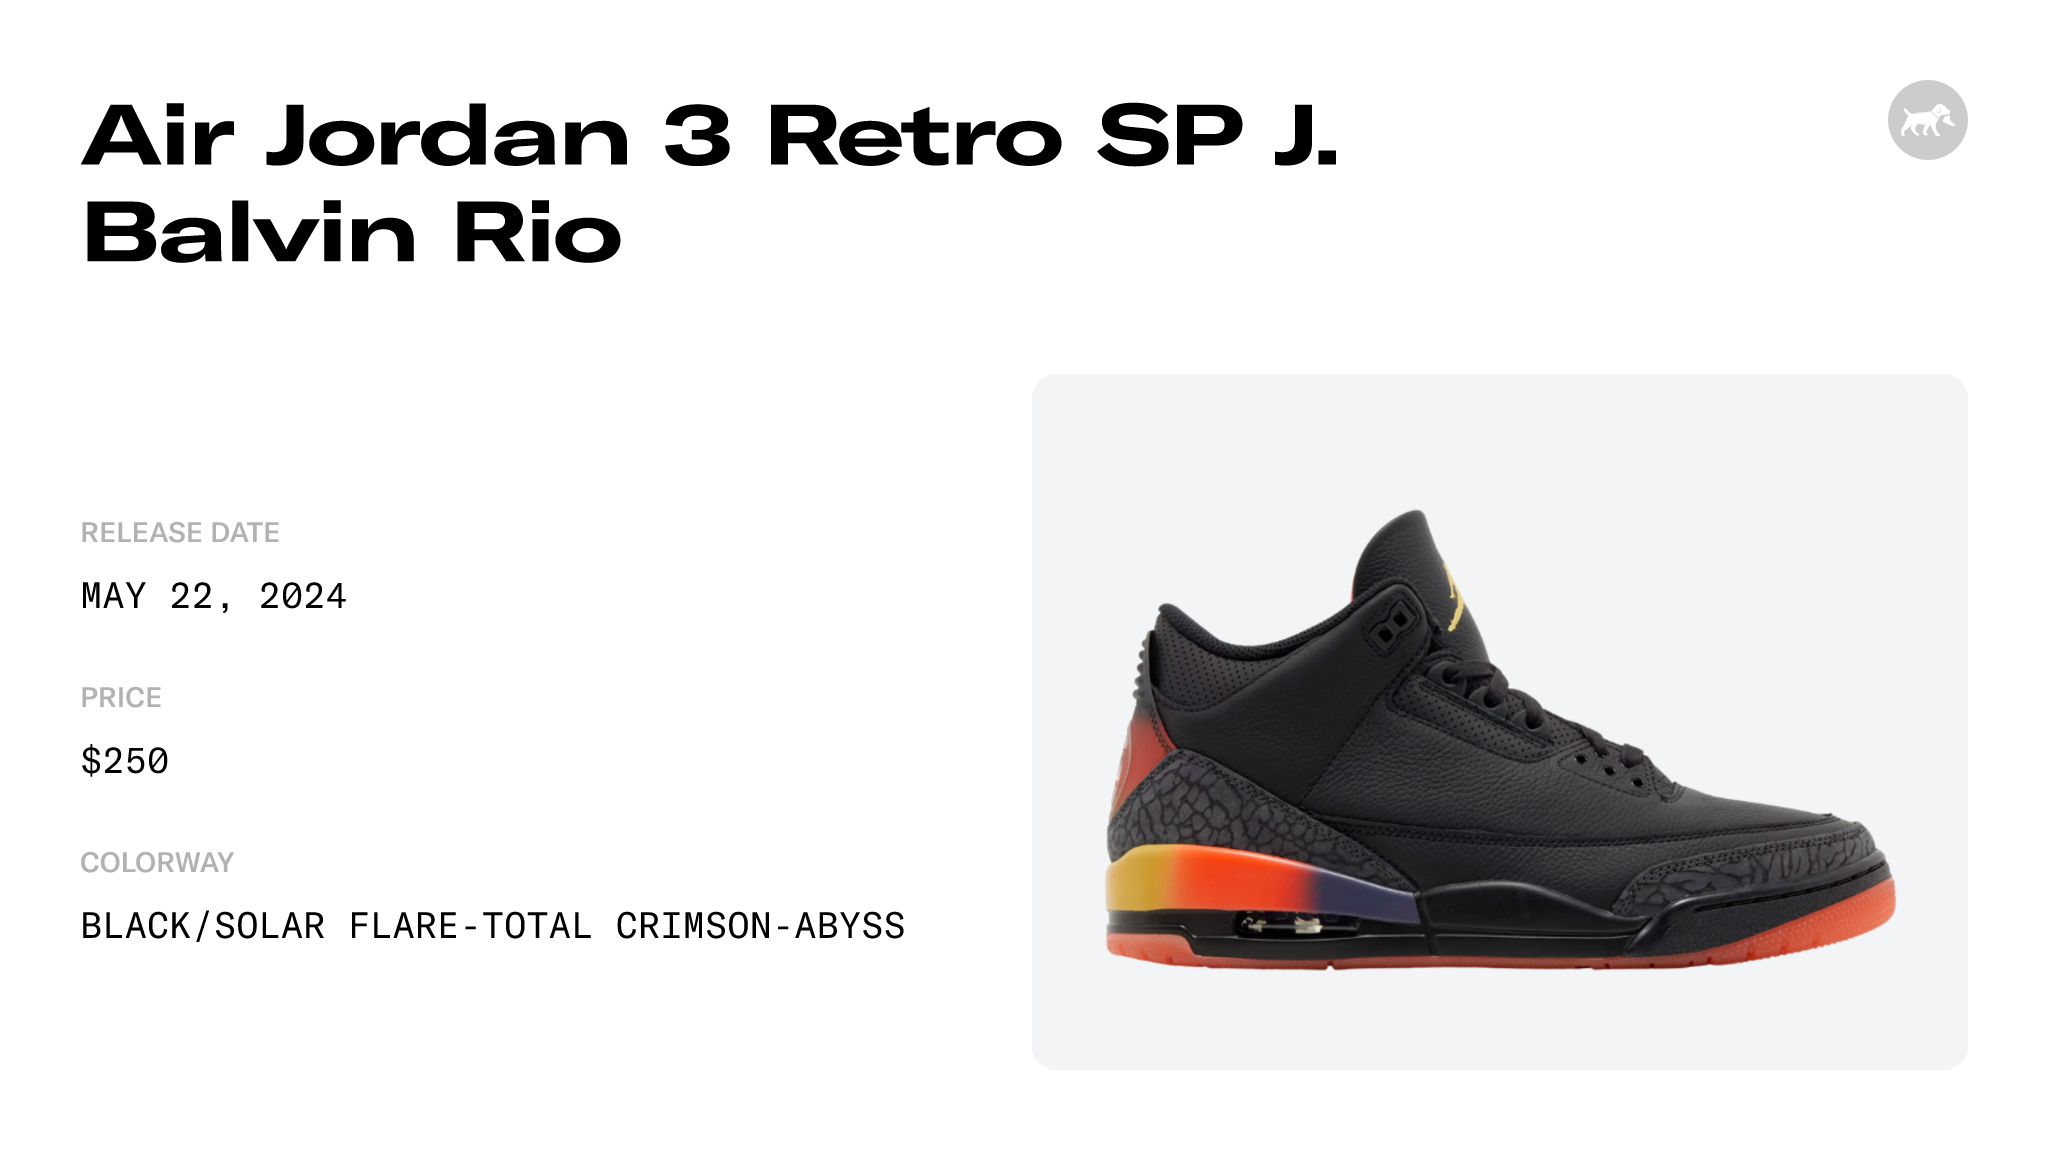 Air Jordan 3 Retro SP J. Balvin Rio - FN0344-001 Raffles and Release Date